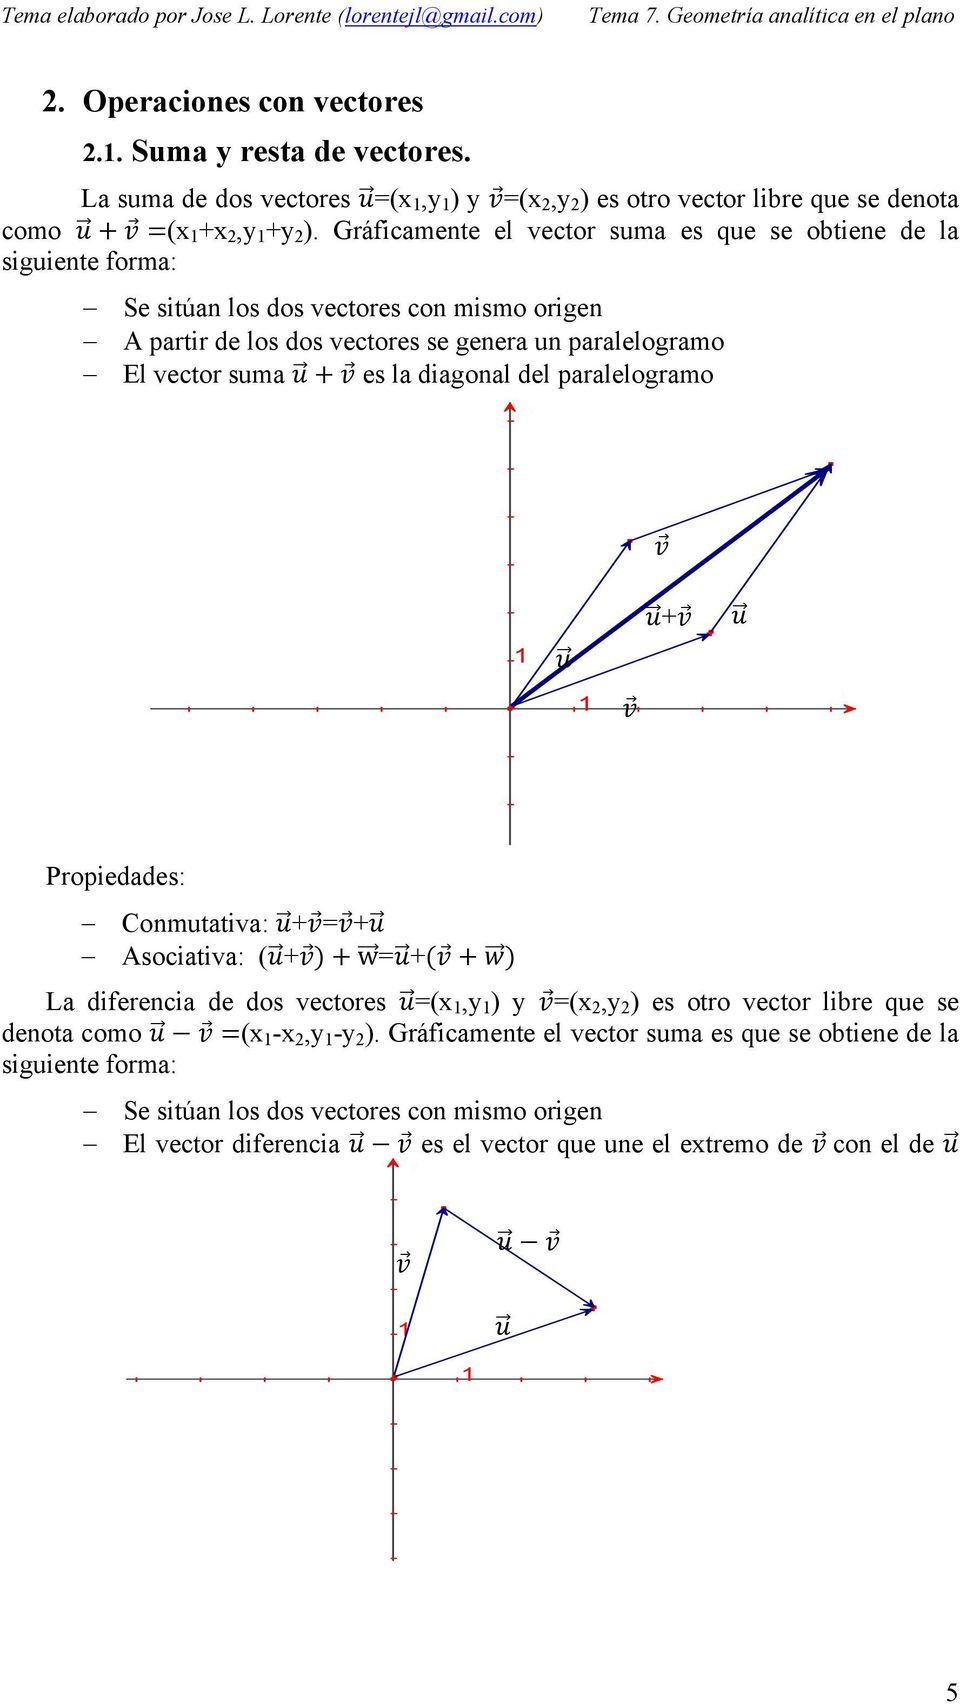 vector suma es la diagonal del paralelogramo + Propiedades: Conmutativa: +=+ Asociativa: (+ w=+ La diferencia de dos vectores =(x,y ) y =(x,y ) es otro vector libre que se